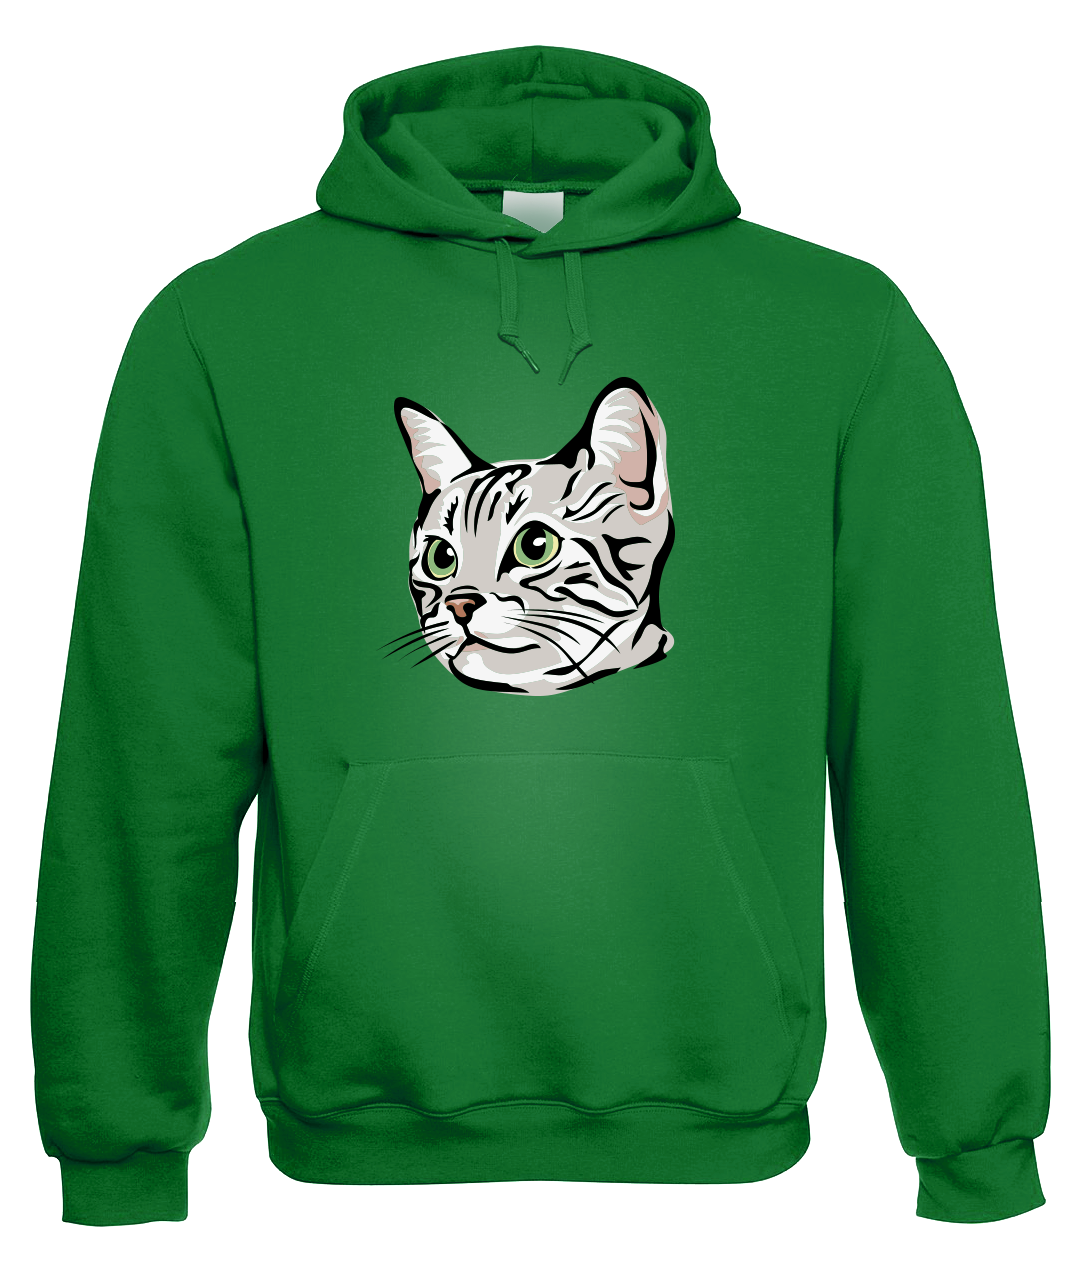 Mikina s kočkou - Zelenoočka Velikost: M, Barva: Zelená